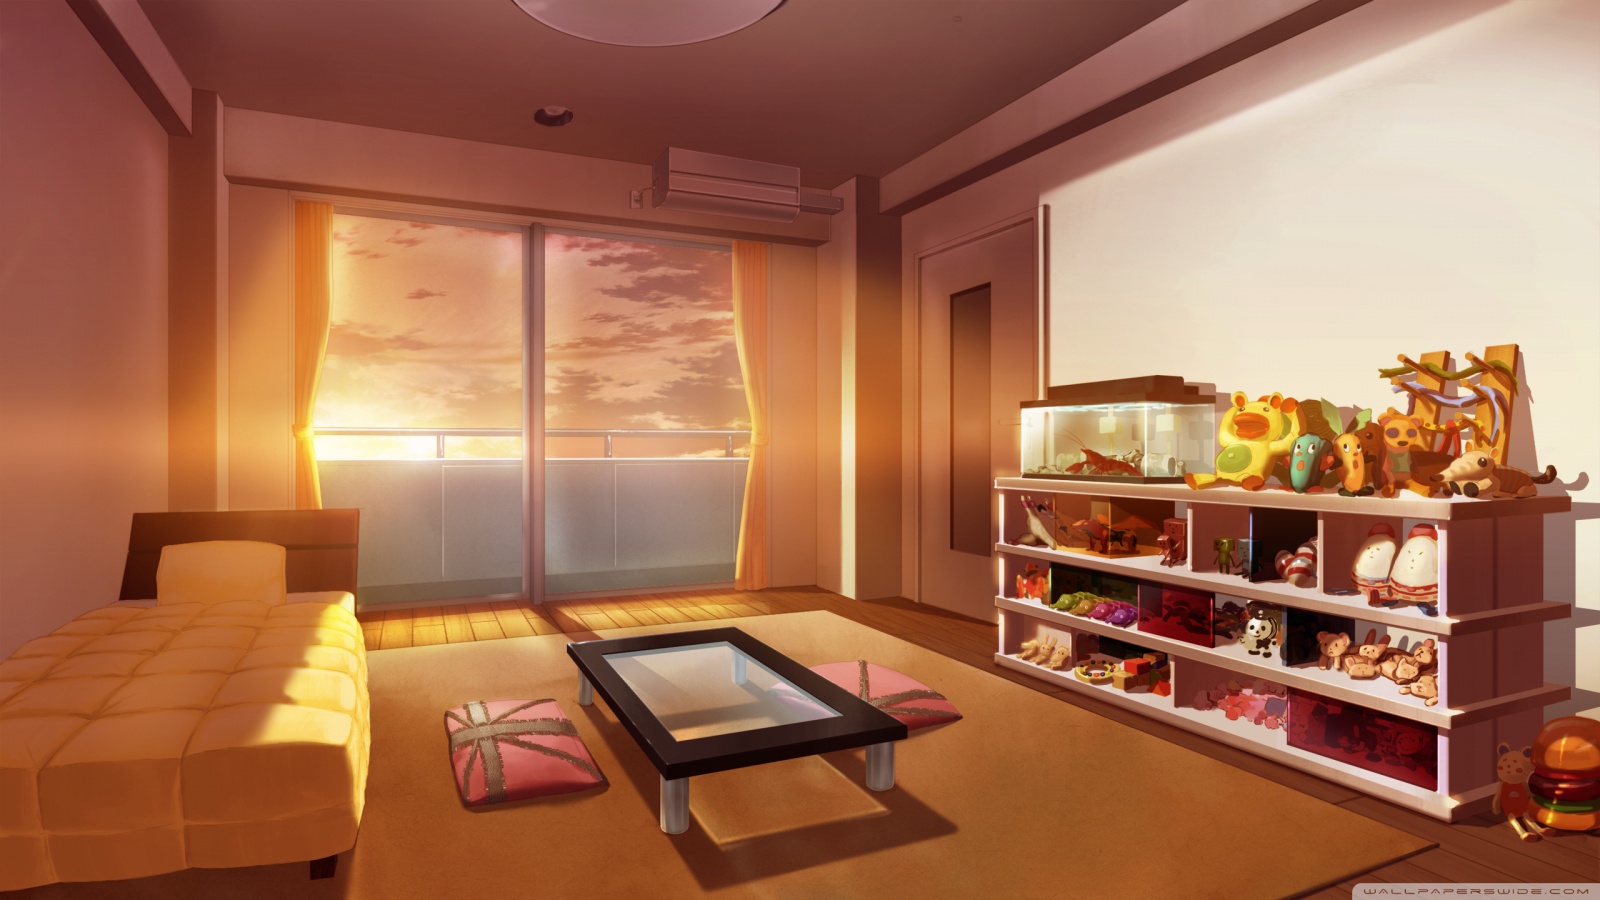 Bedroom Anime Art Ultra HD Desktop Background Wallpaper for 4K UHD TV